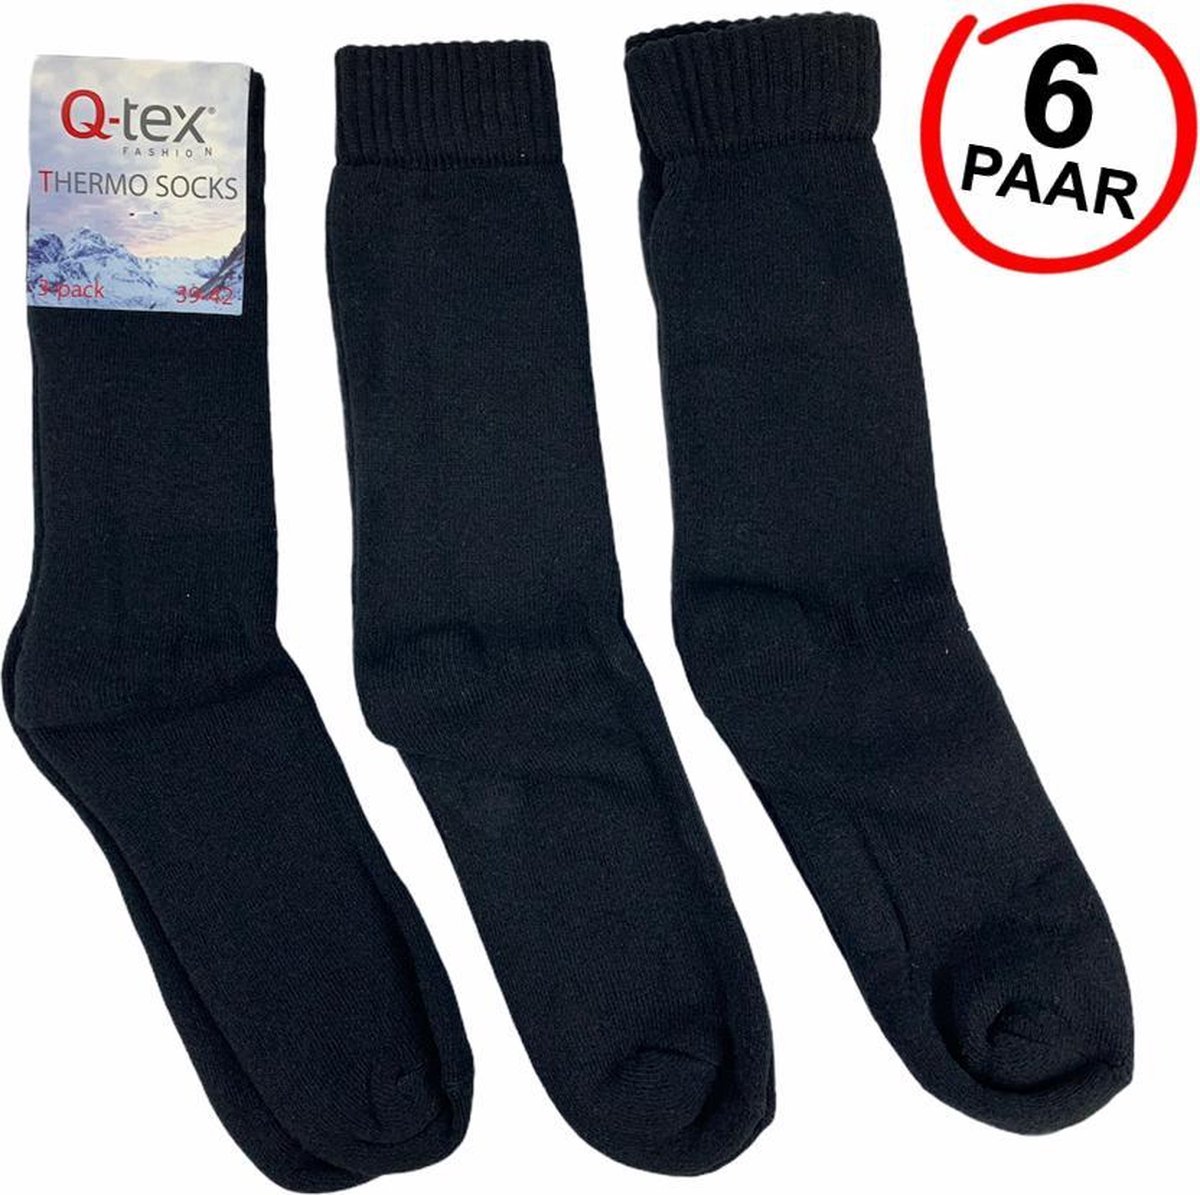 Ongelofelijk speer ernstig 6-Pack Thermosokken Thermo Socks Q-Tex maat 39-42 | bol.com